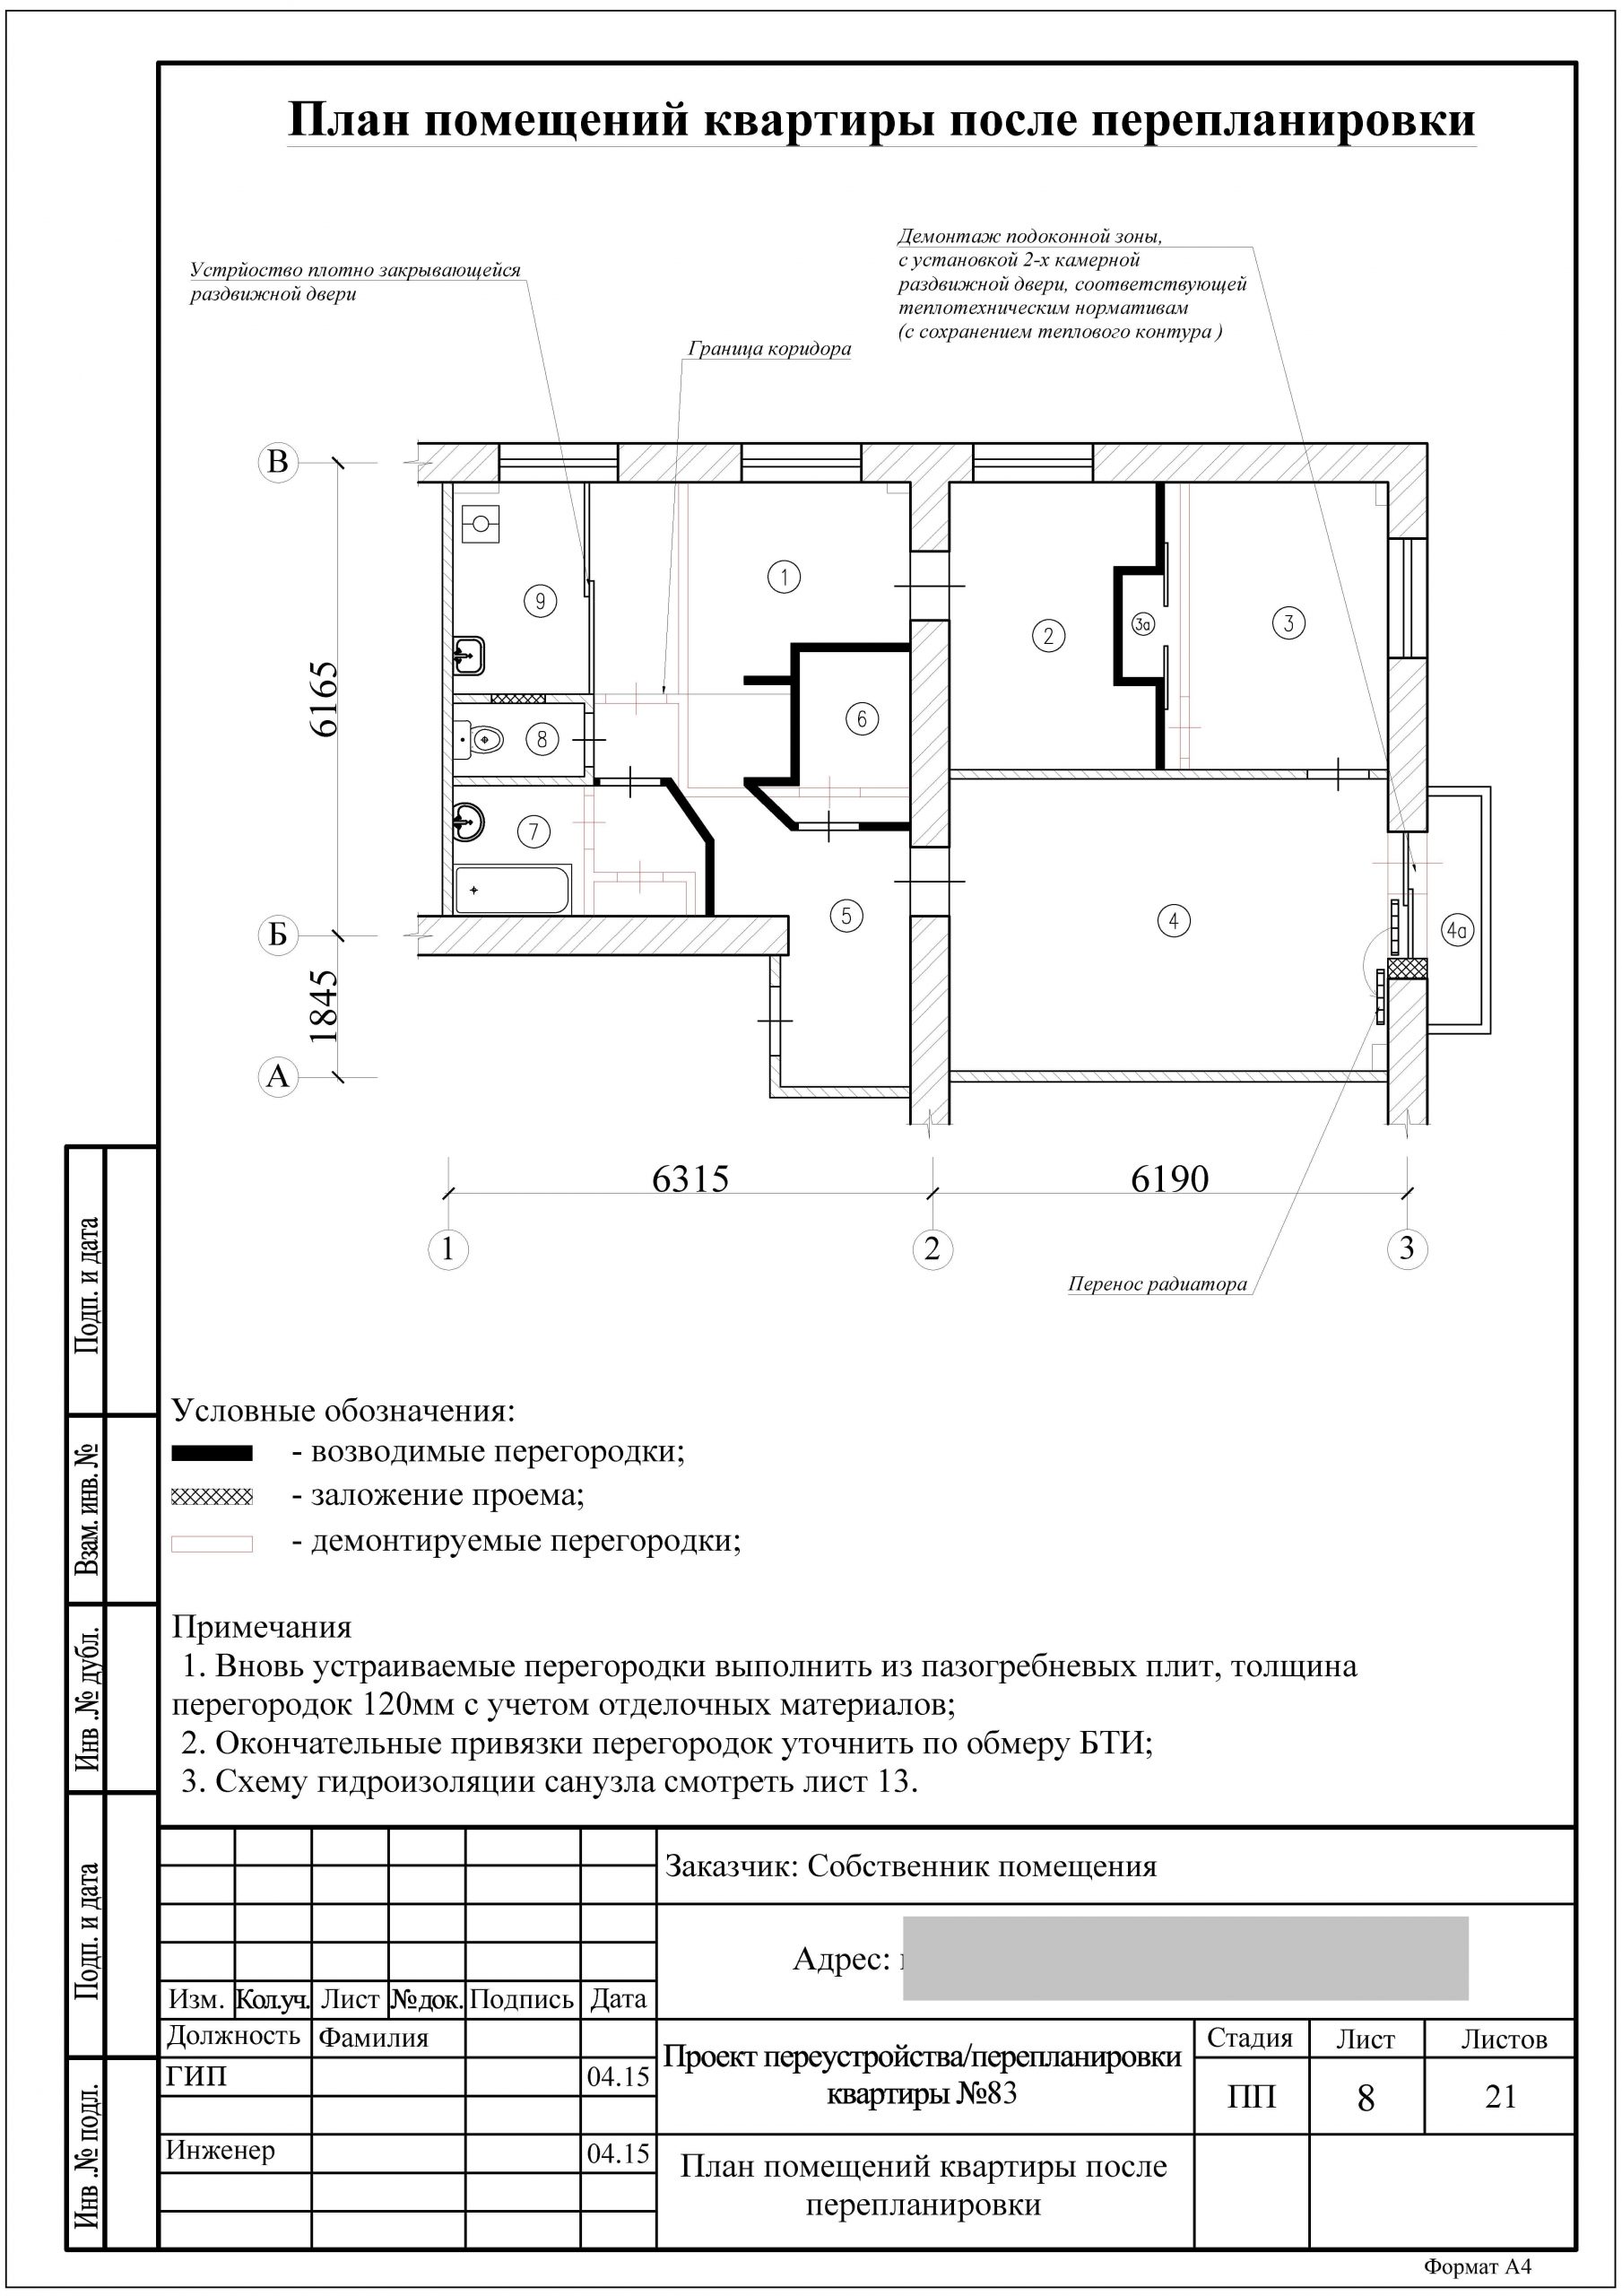 АПБ ГРАД: подготовит любой проект перепланировки квартиры или апартамента